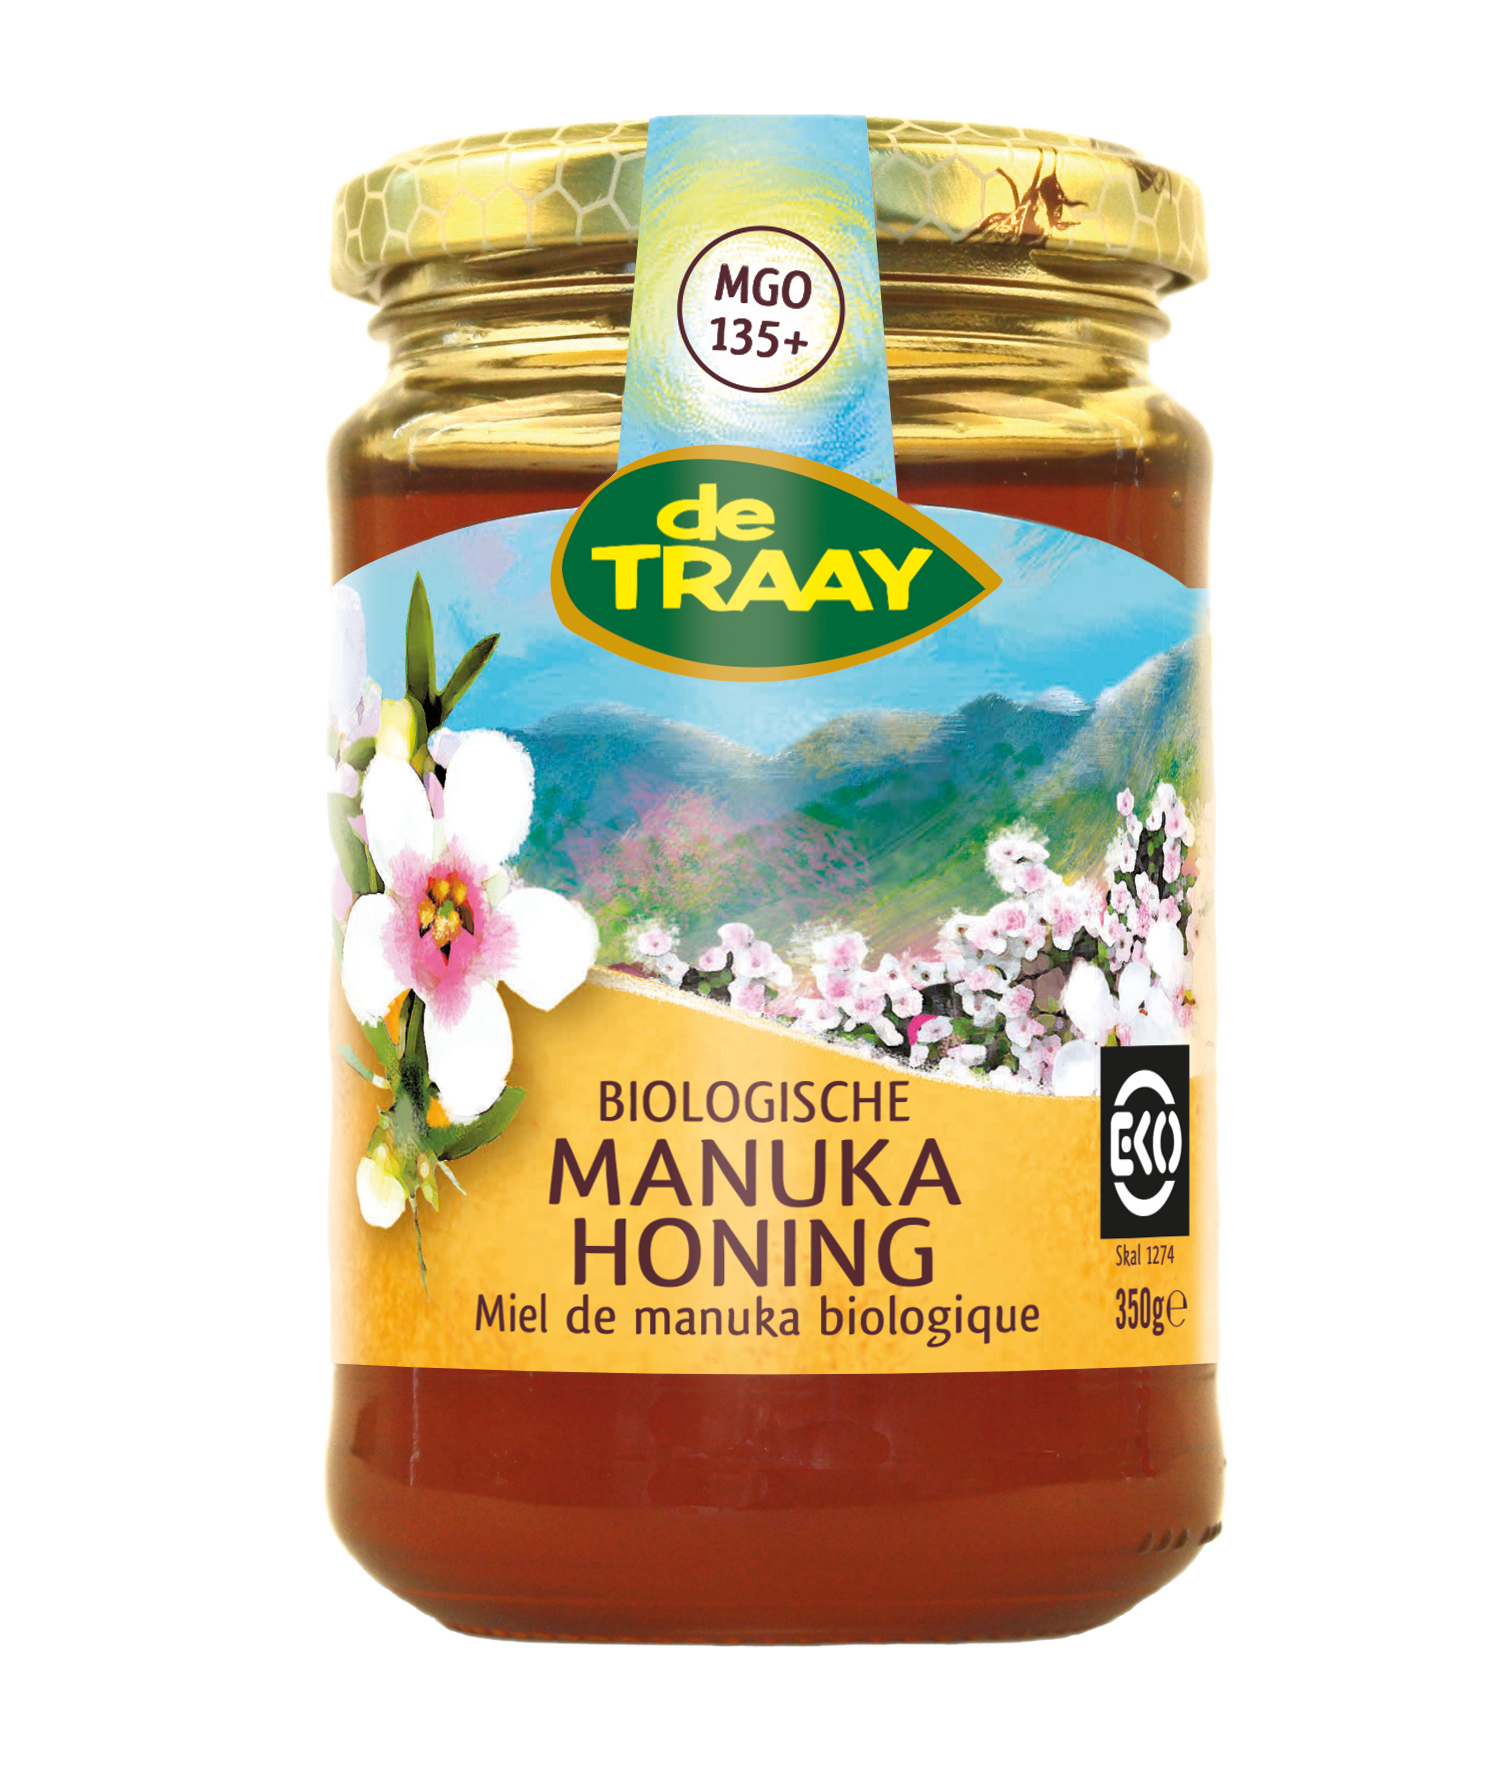 Organic Manuka honey